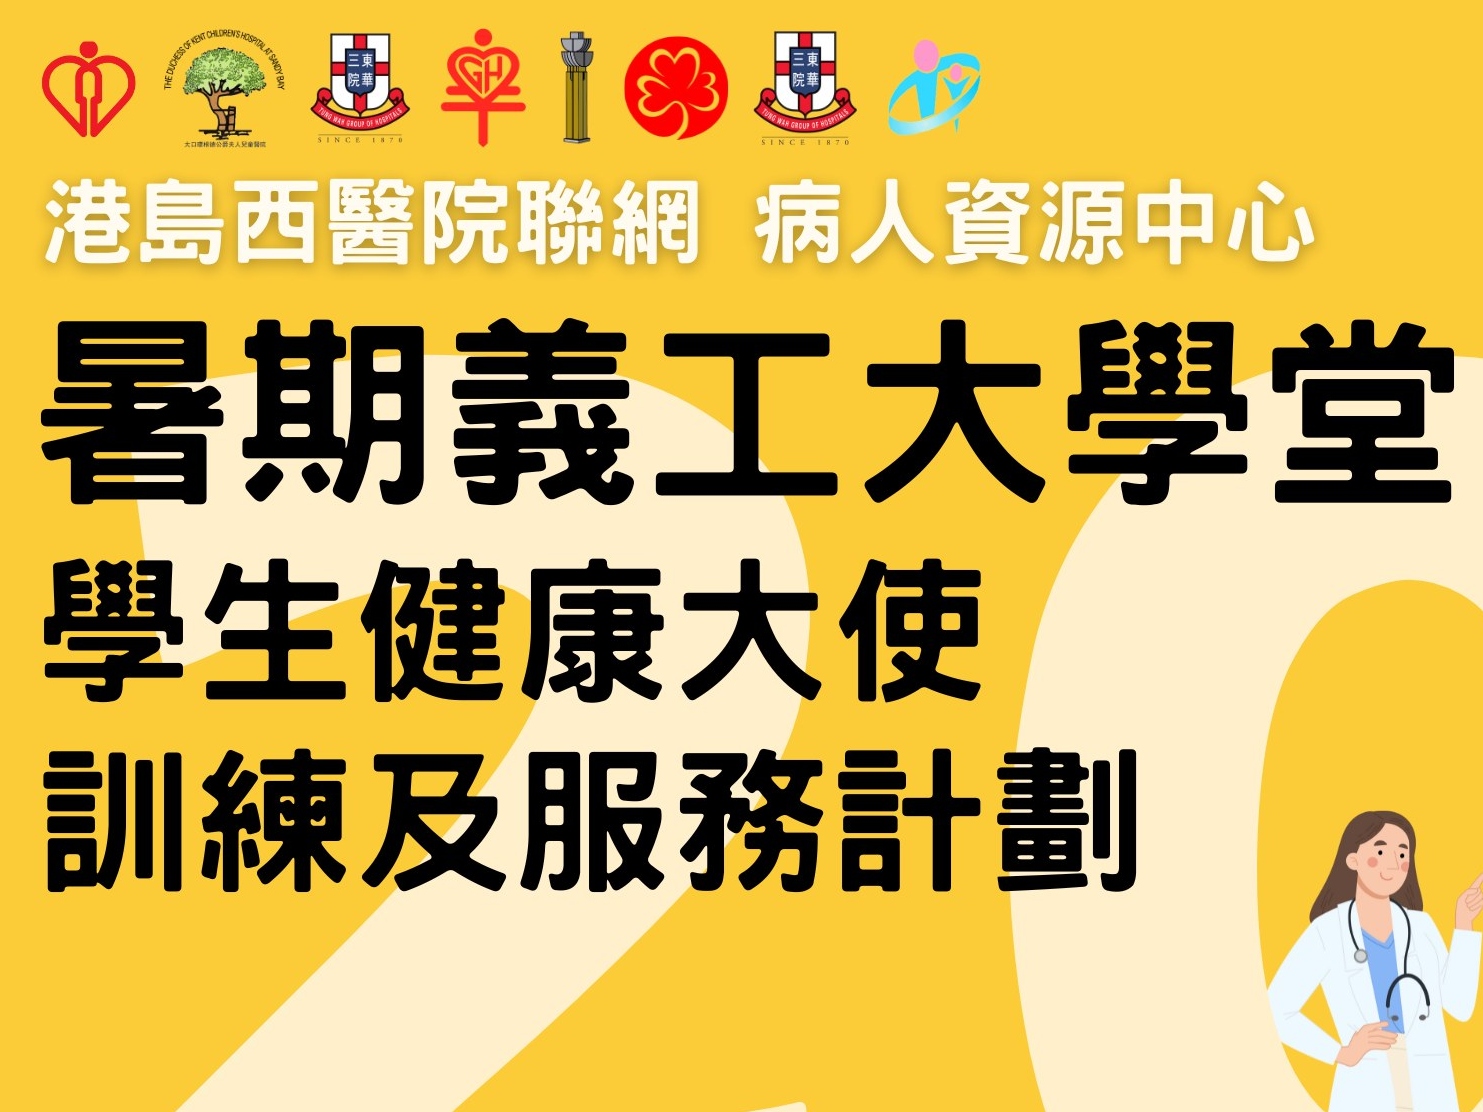 請即報名參加港島西醫院聯網病人資源中心–暑期義工大學堂~學生健康大使訓練及服務計劃 義工招募，成為義工 Volunteer for Hong Kong West Cluster - Healthy Summer School now